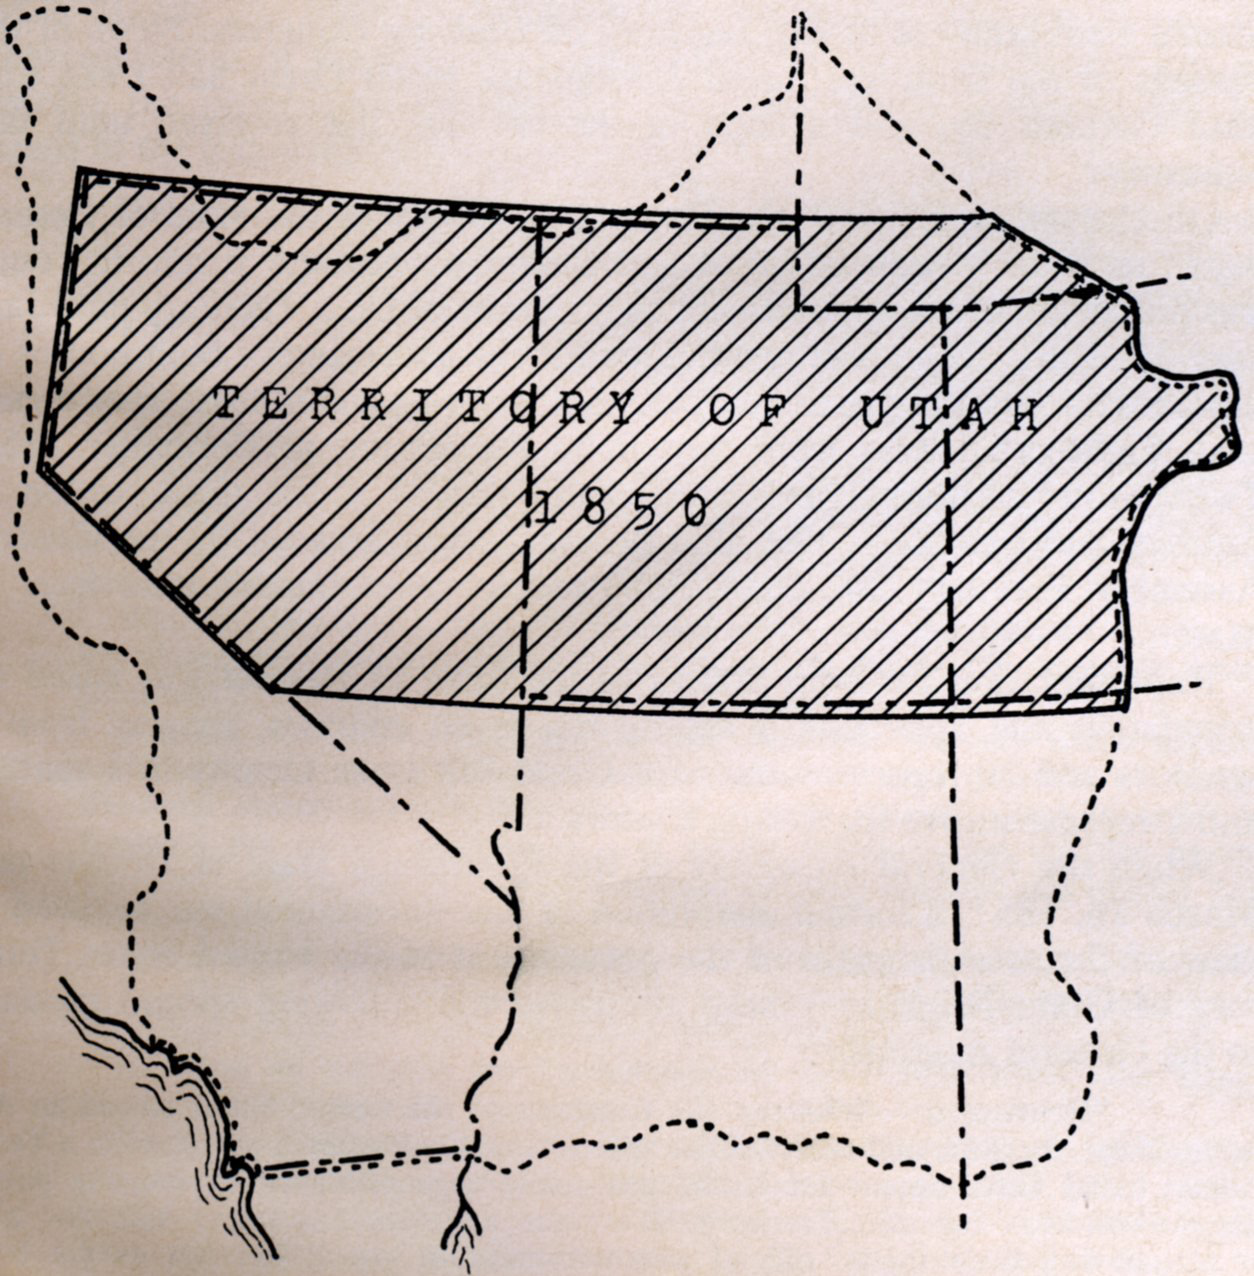 TERRITORY OF UTAH 1850